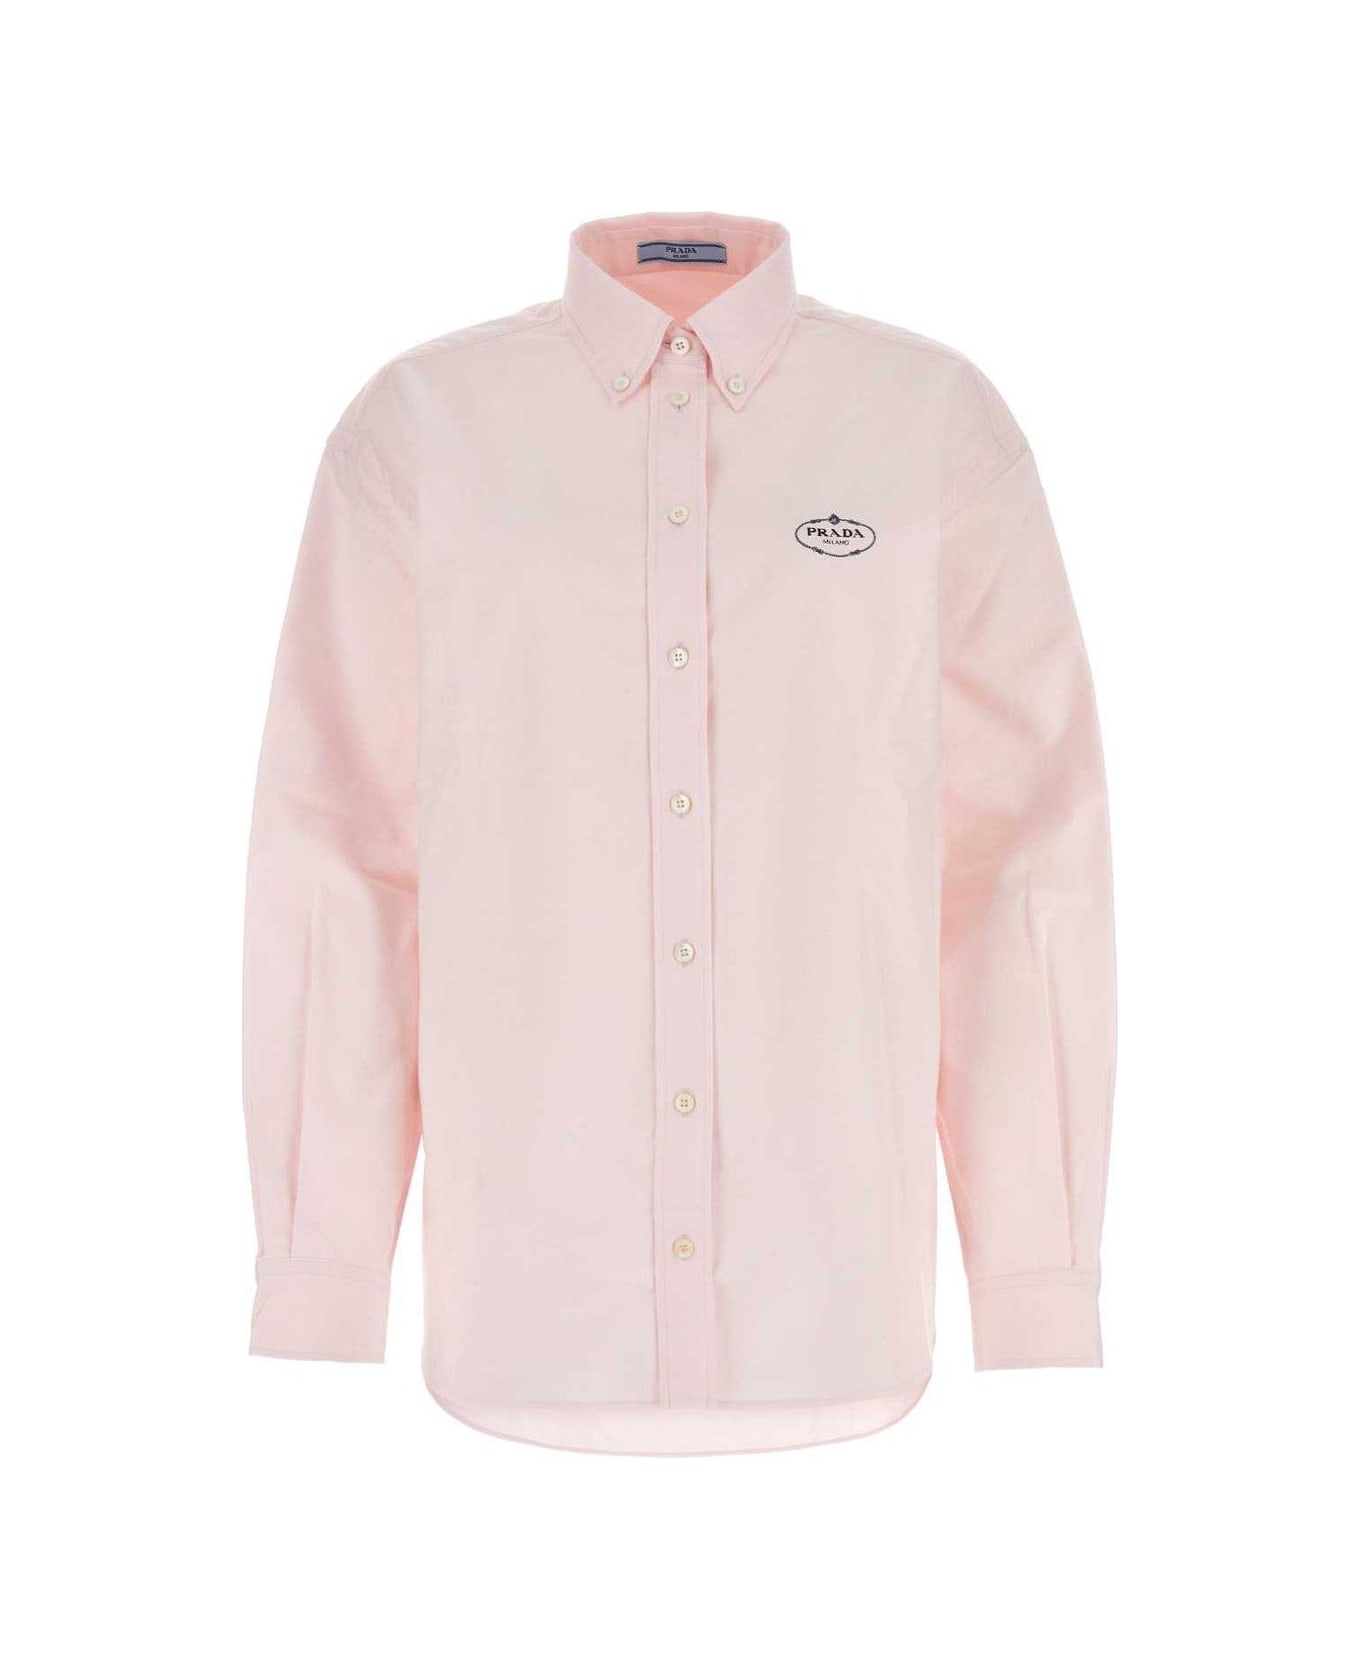 Prada Logo Detailed Oversized Shirt - Pink